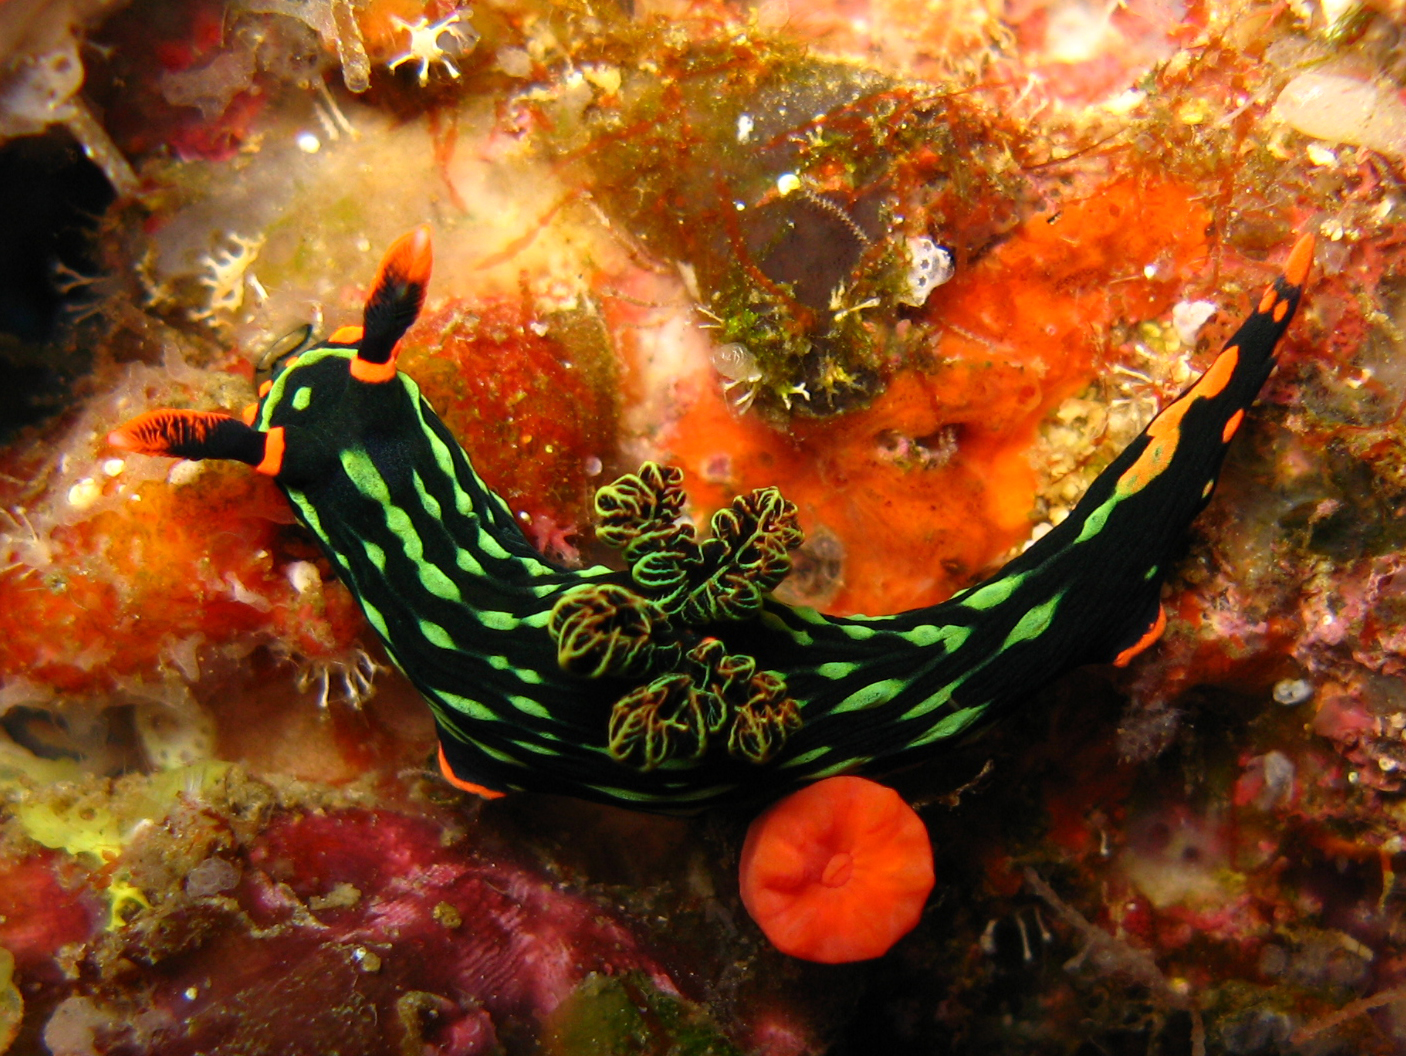 a tropical sea slug crawling around an orange reef